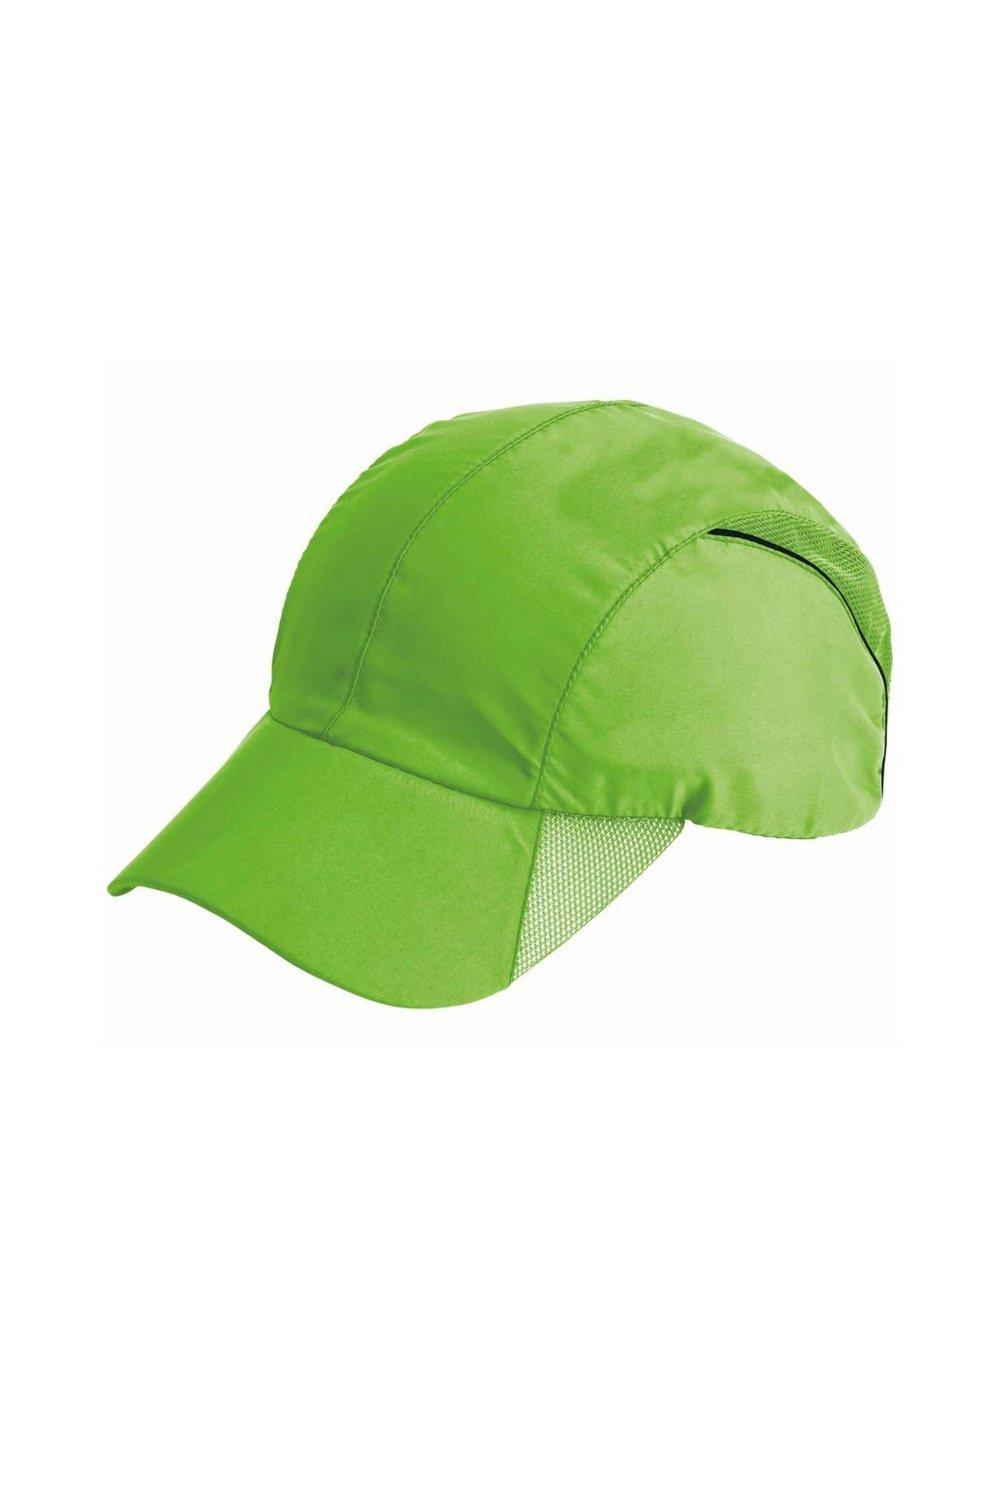 Ударная спортивная кепка Spiro, зеленый